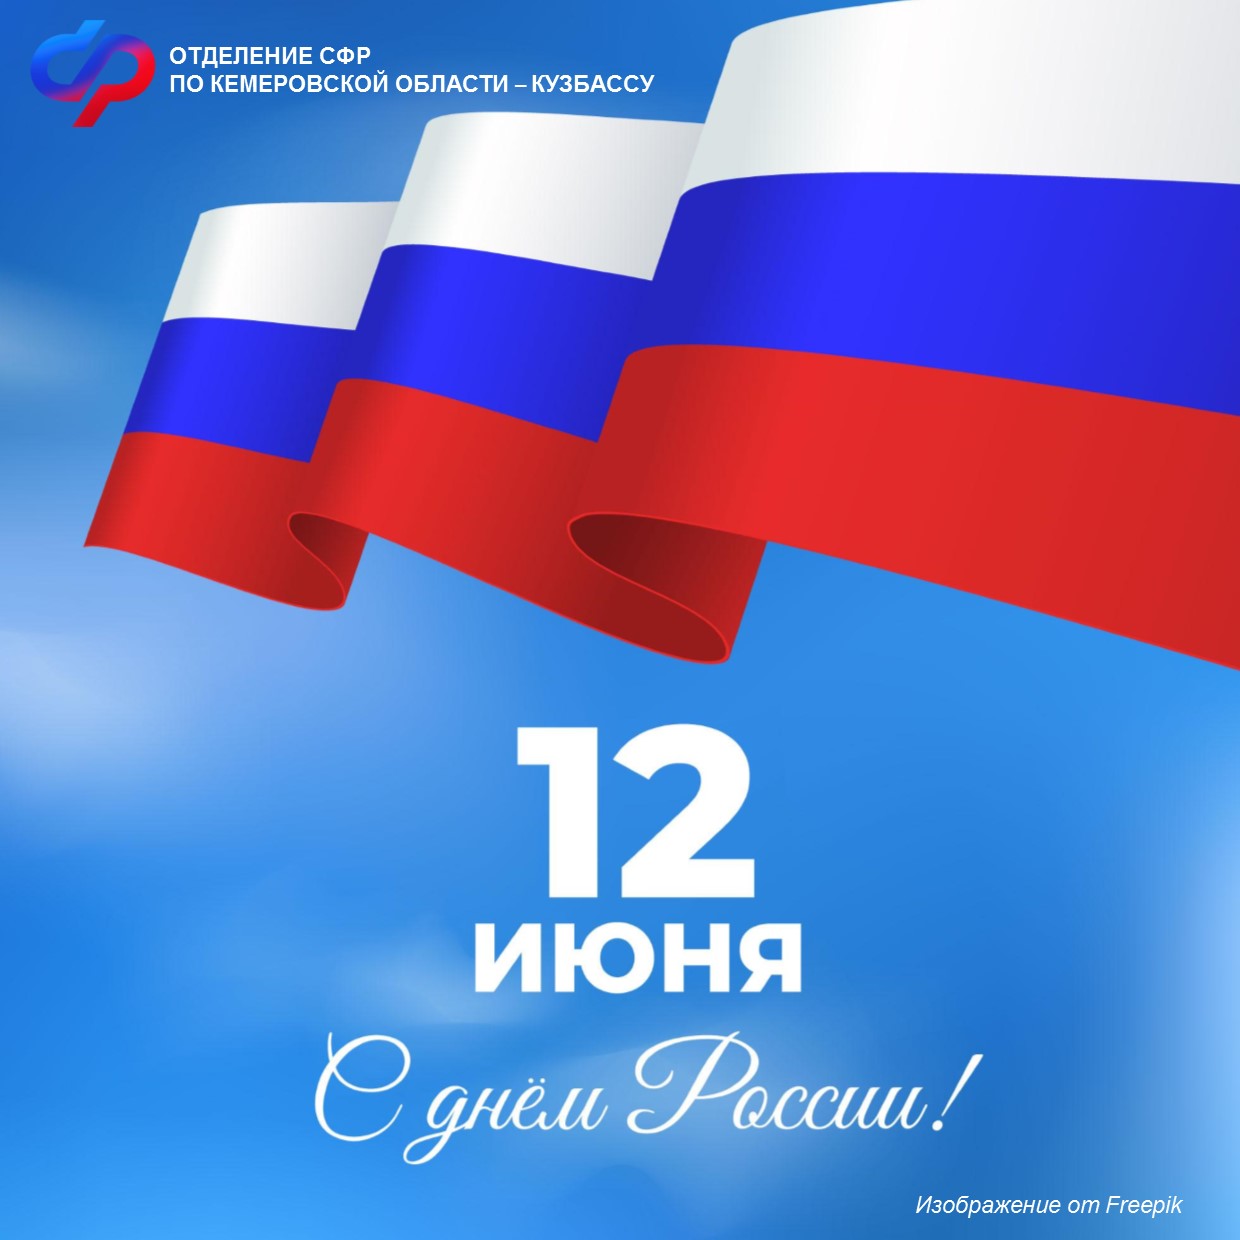 Дорогие друзья! Поздравляем вас с главным государственным праздником – Днем России!